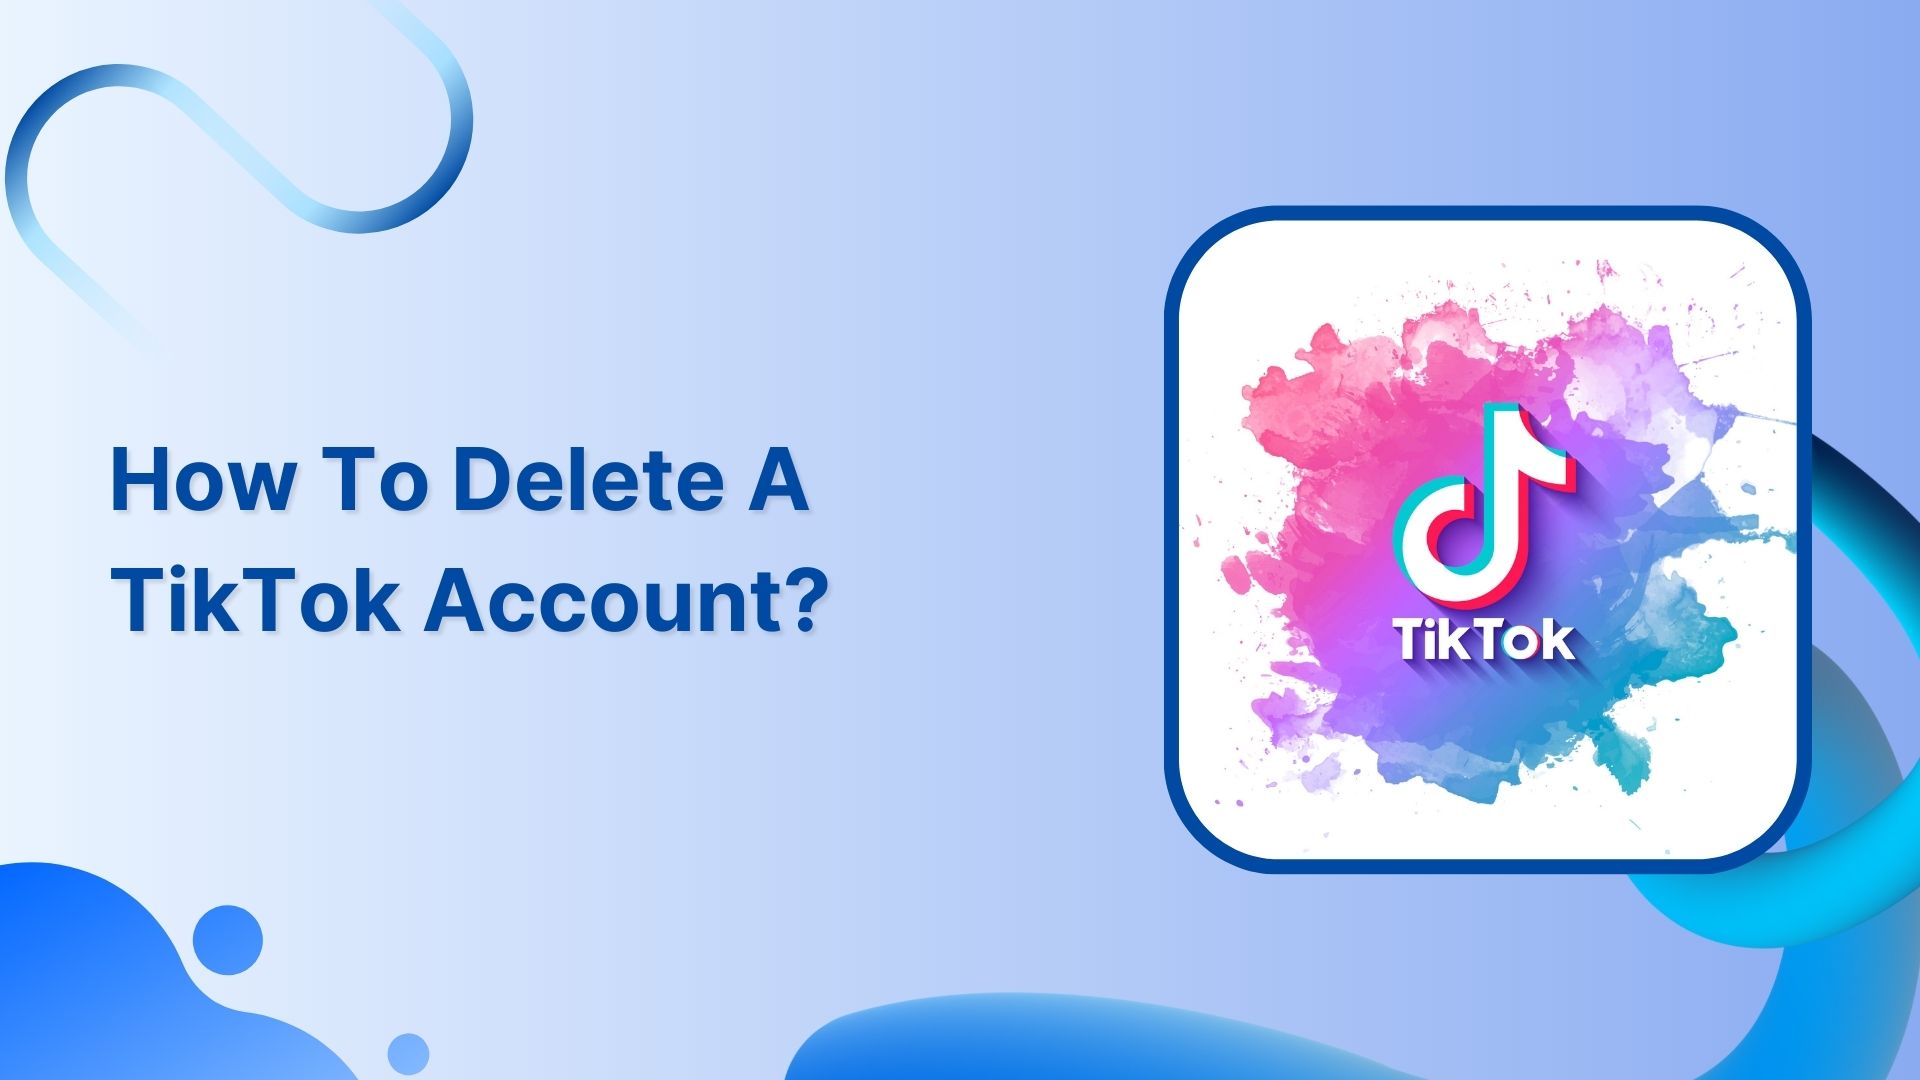 How to delete a TikTok account?